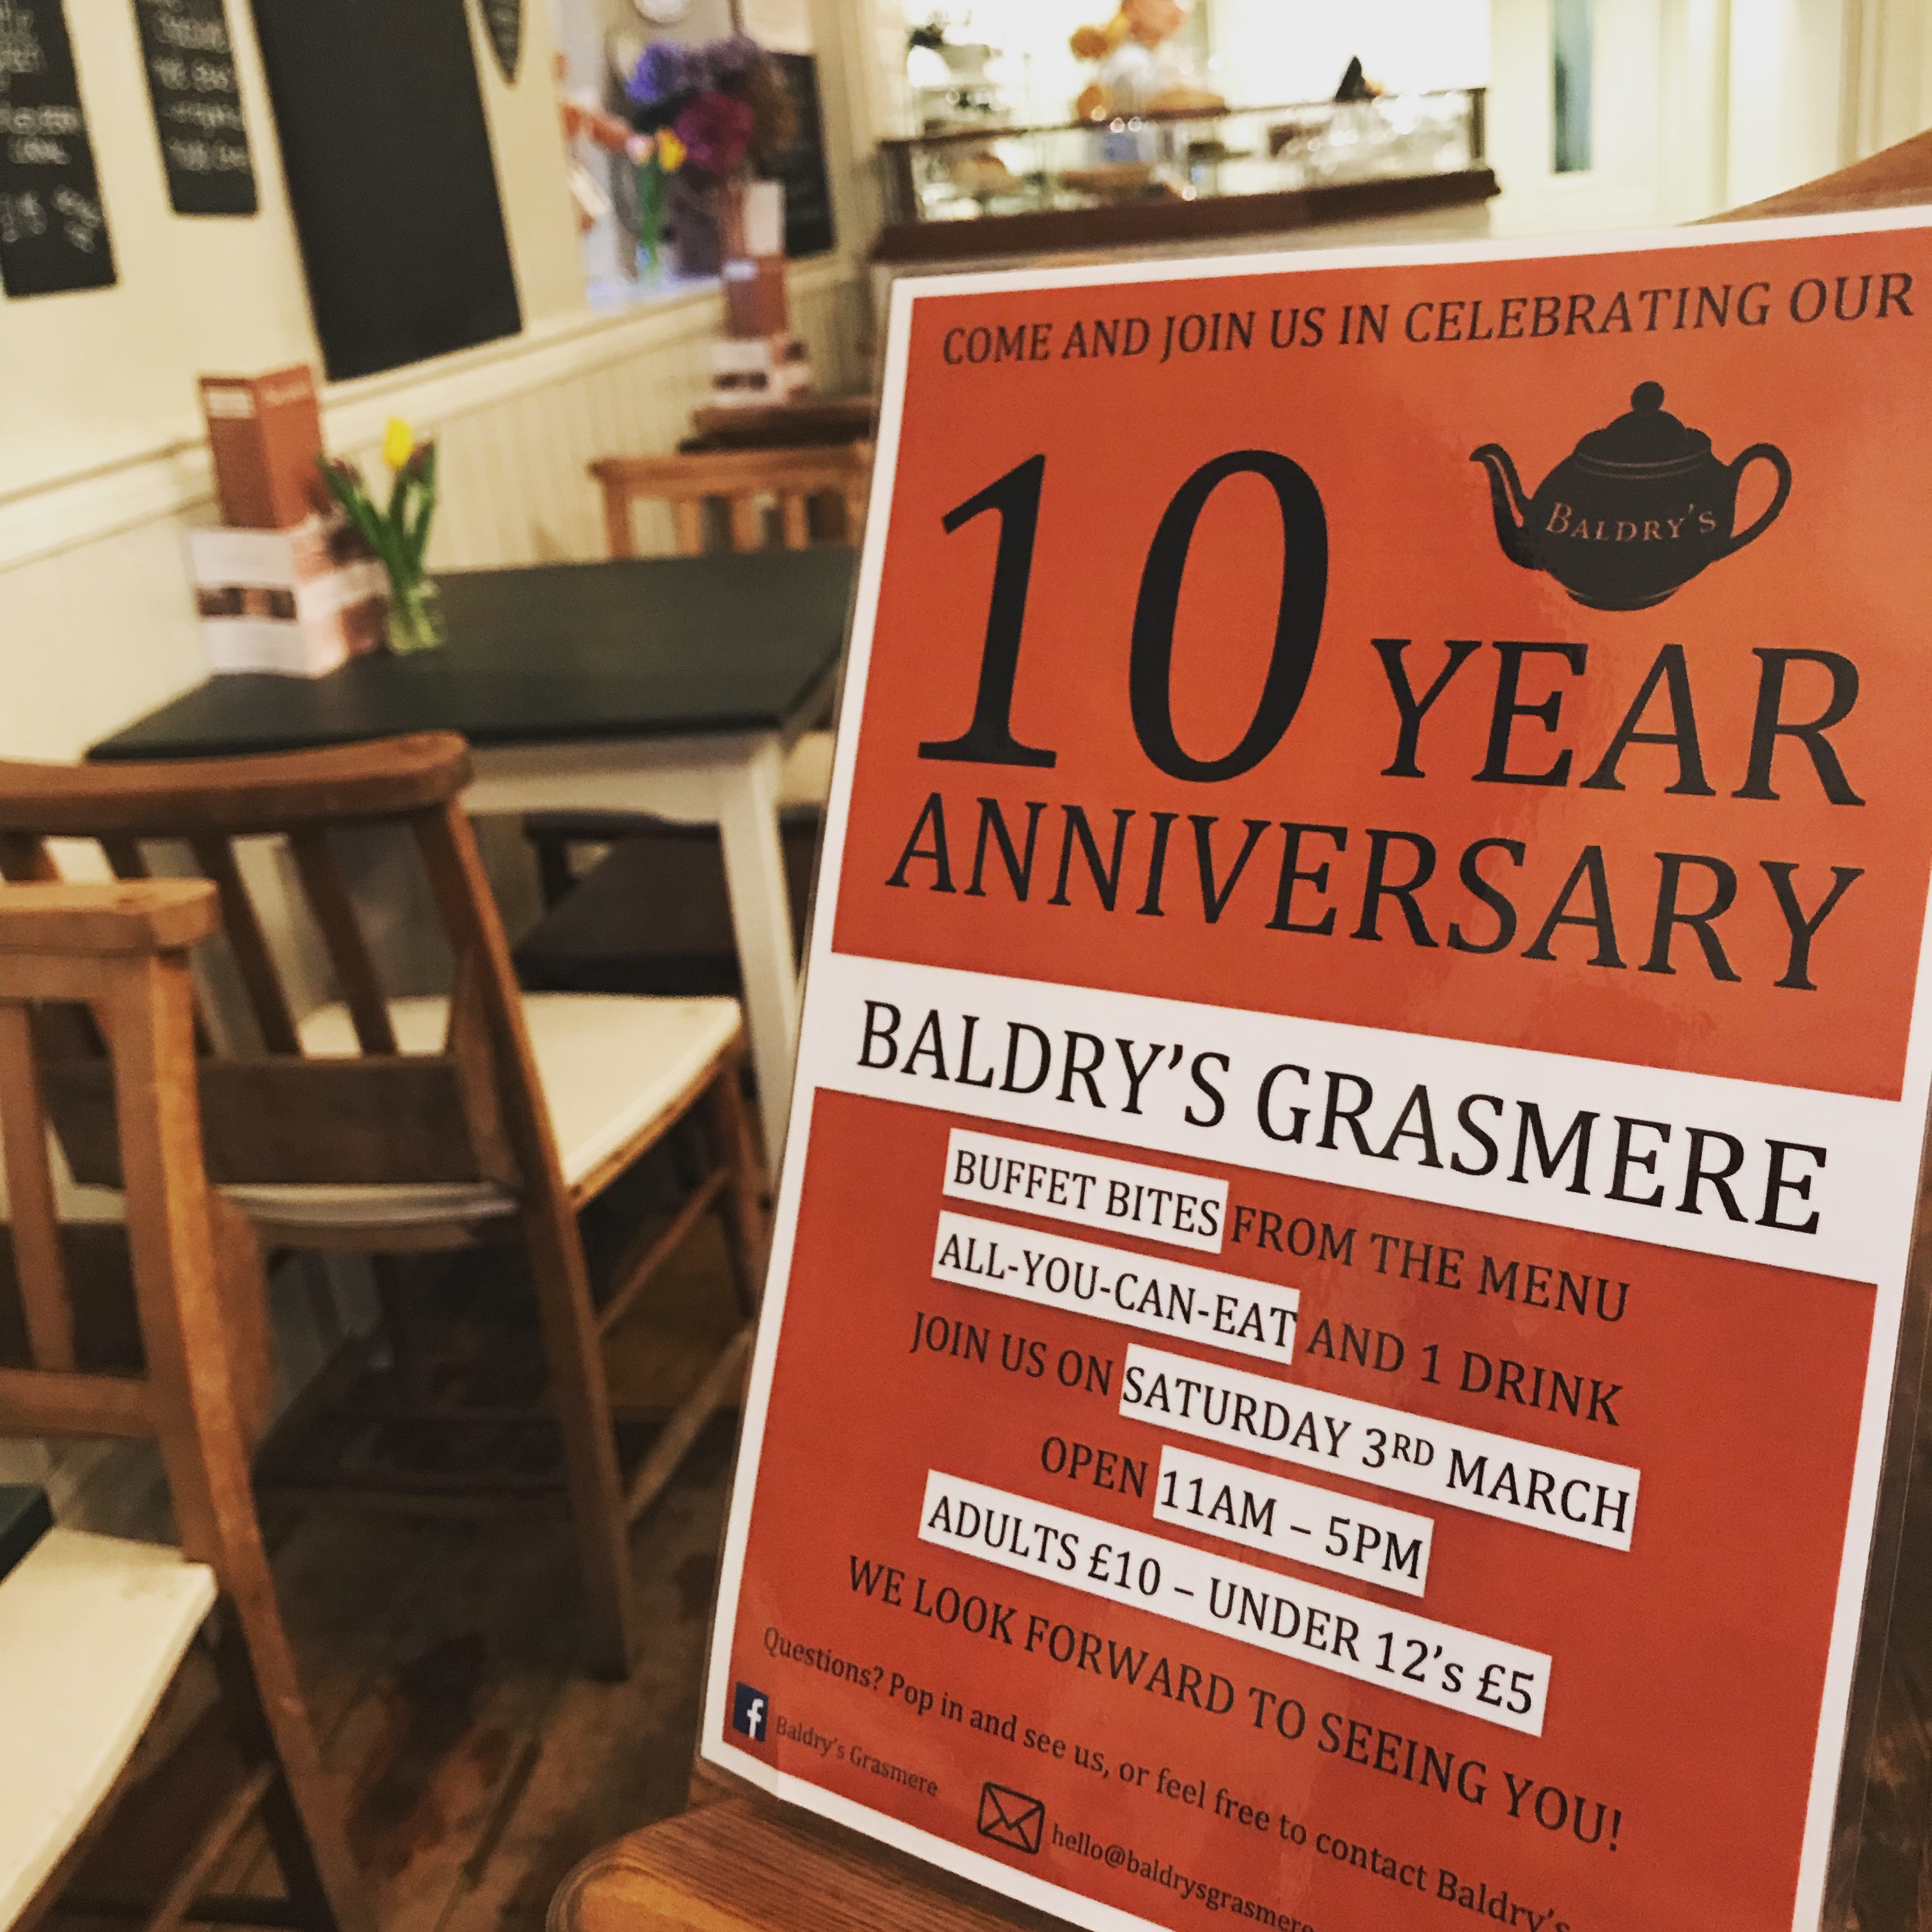 Baldry's 10 year anniversary poster